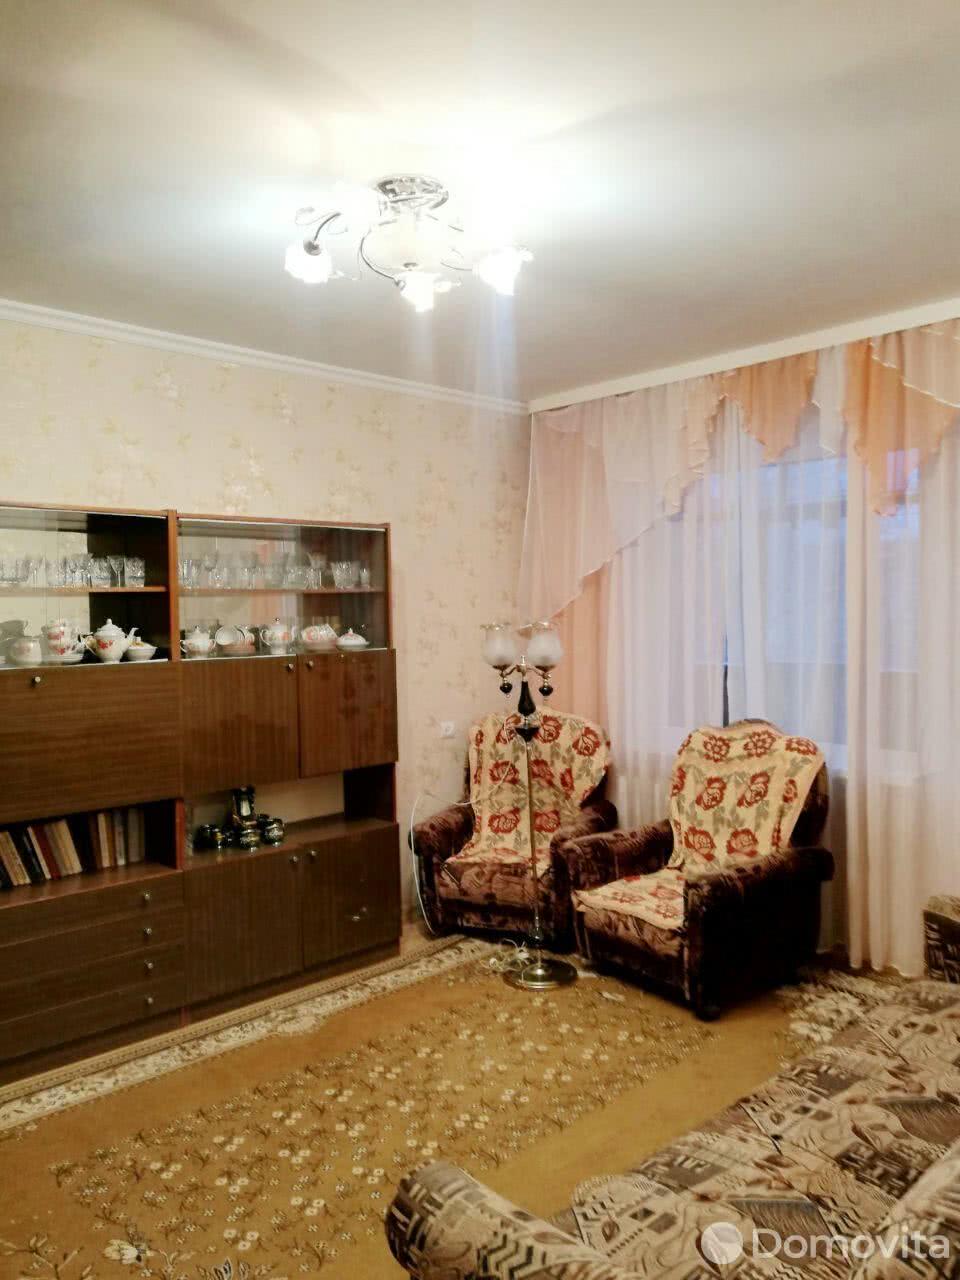 Цена продажи квартиры, Могилев, б-р Непокоренных, д. 60